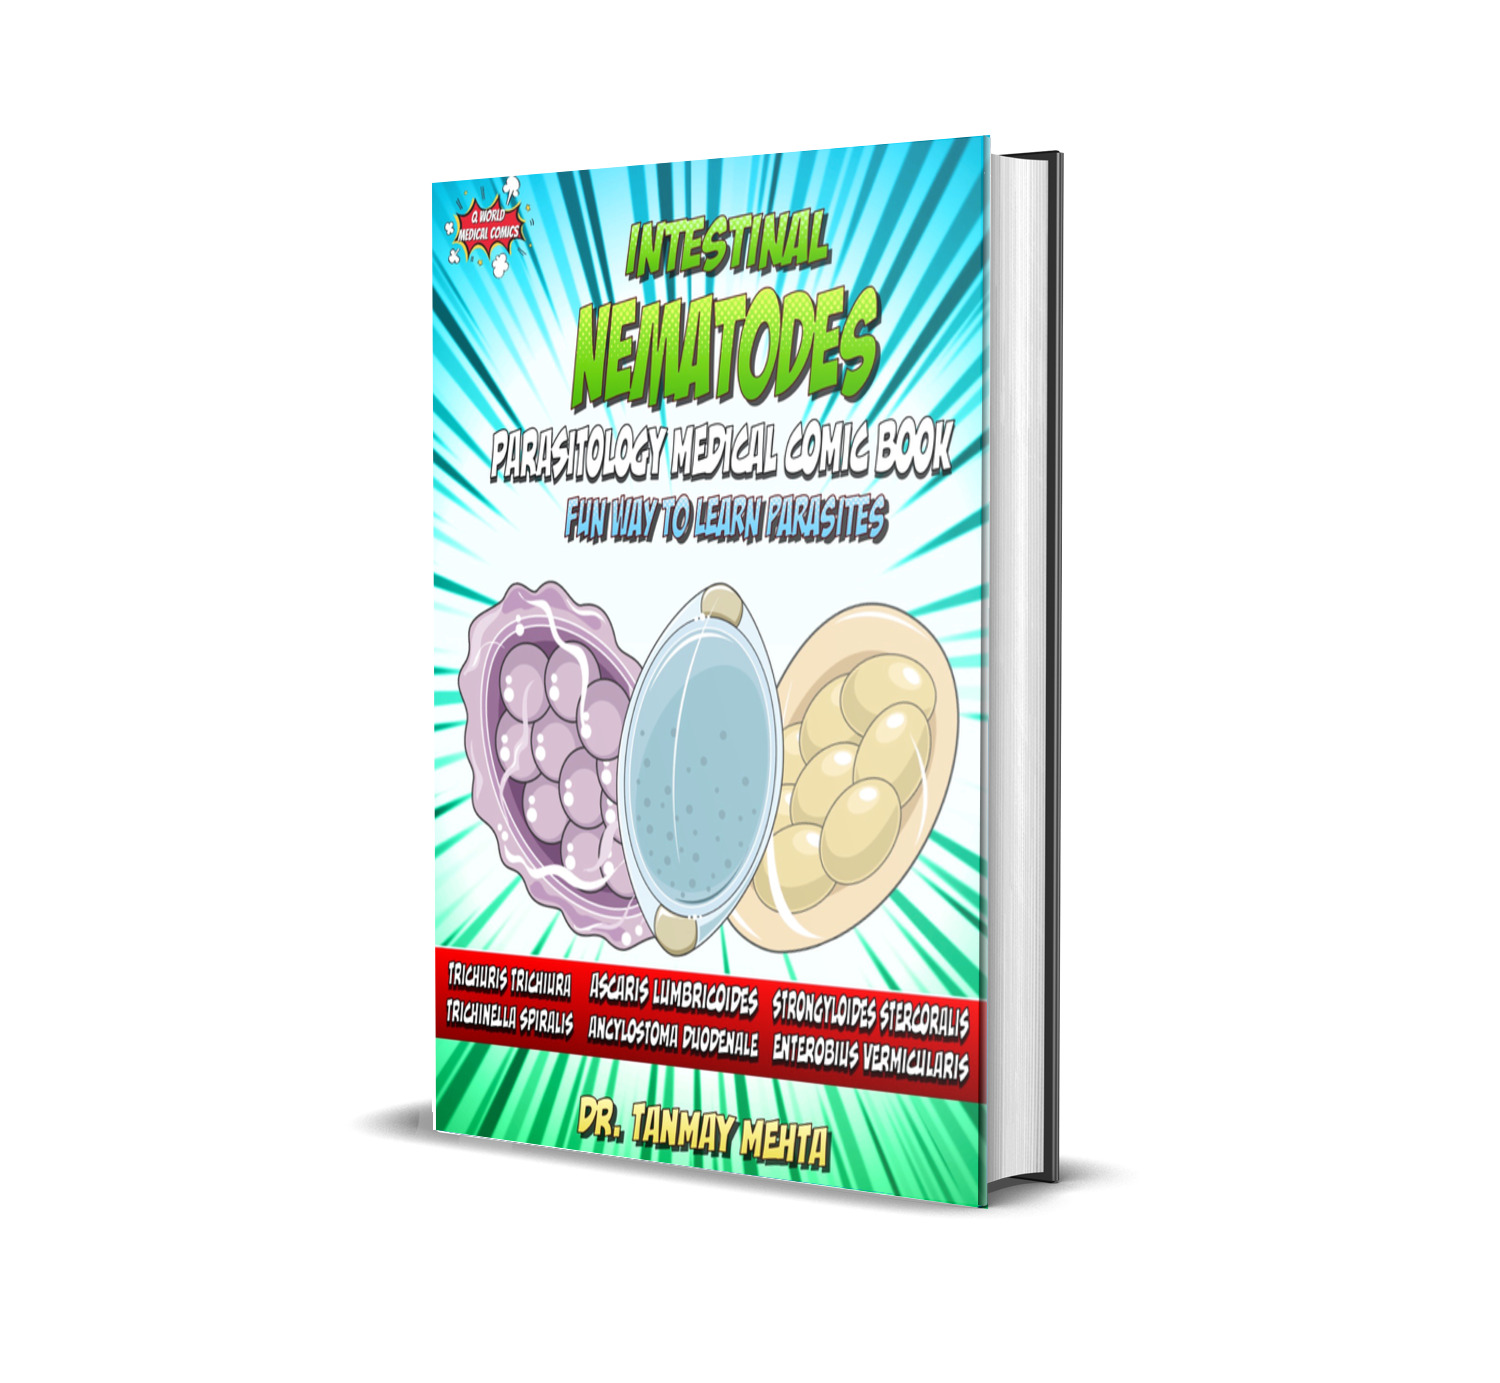 Intestinal Nematodes: Parasitology Medical Comic Book